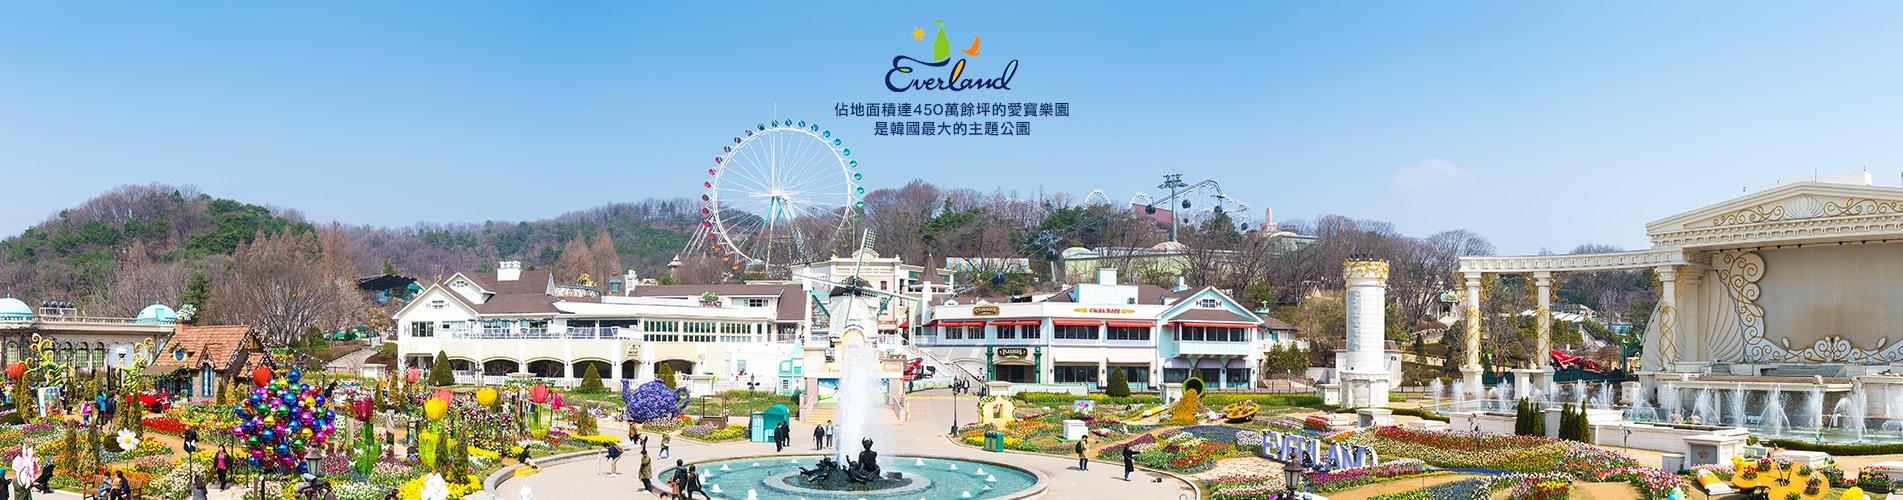 韓國首爾愛寶樂園